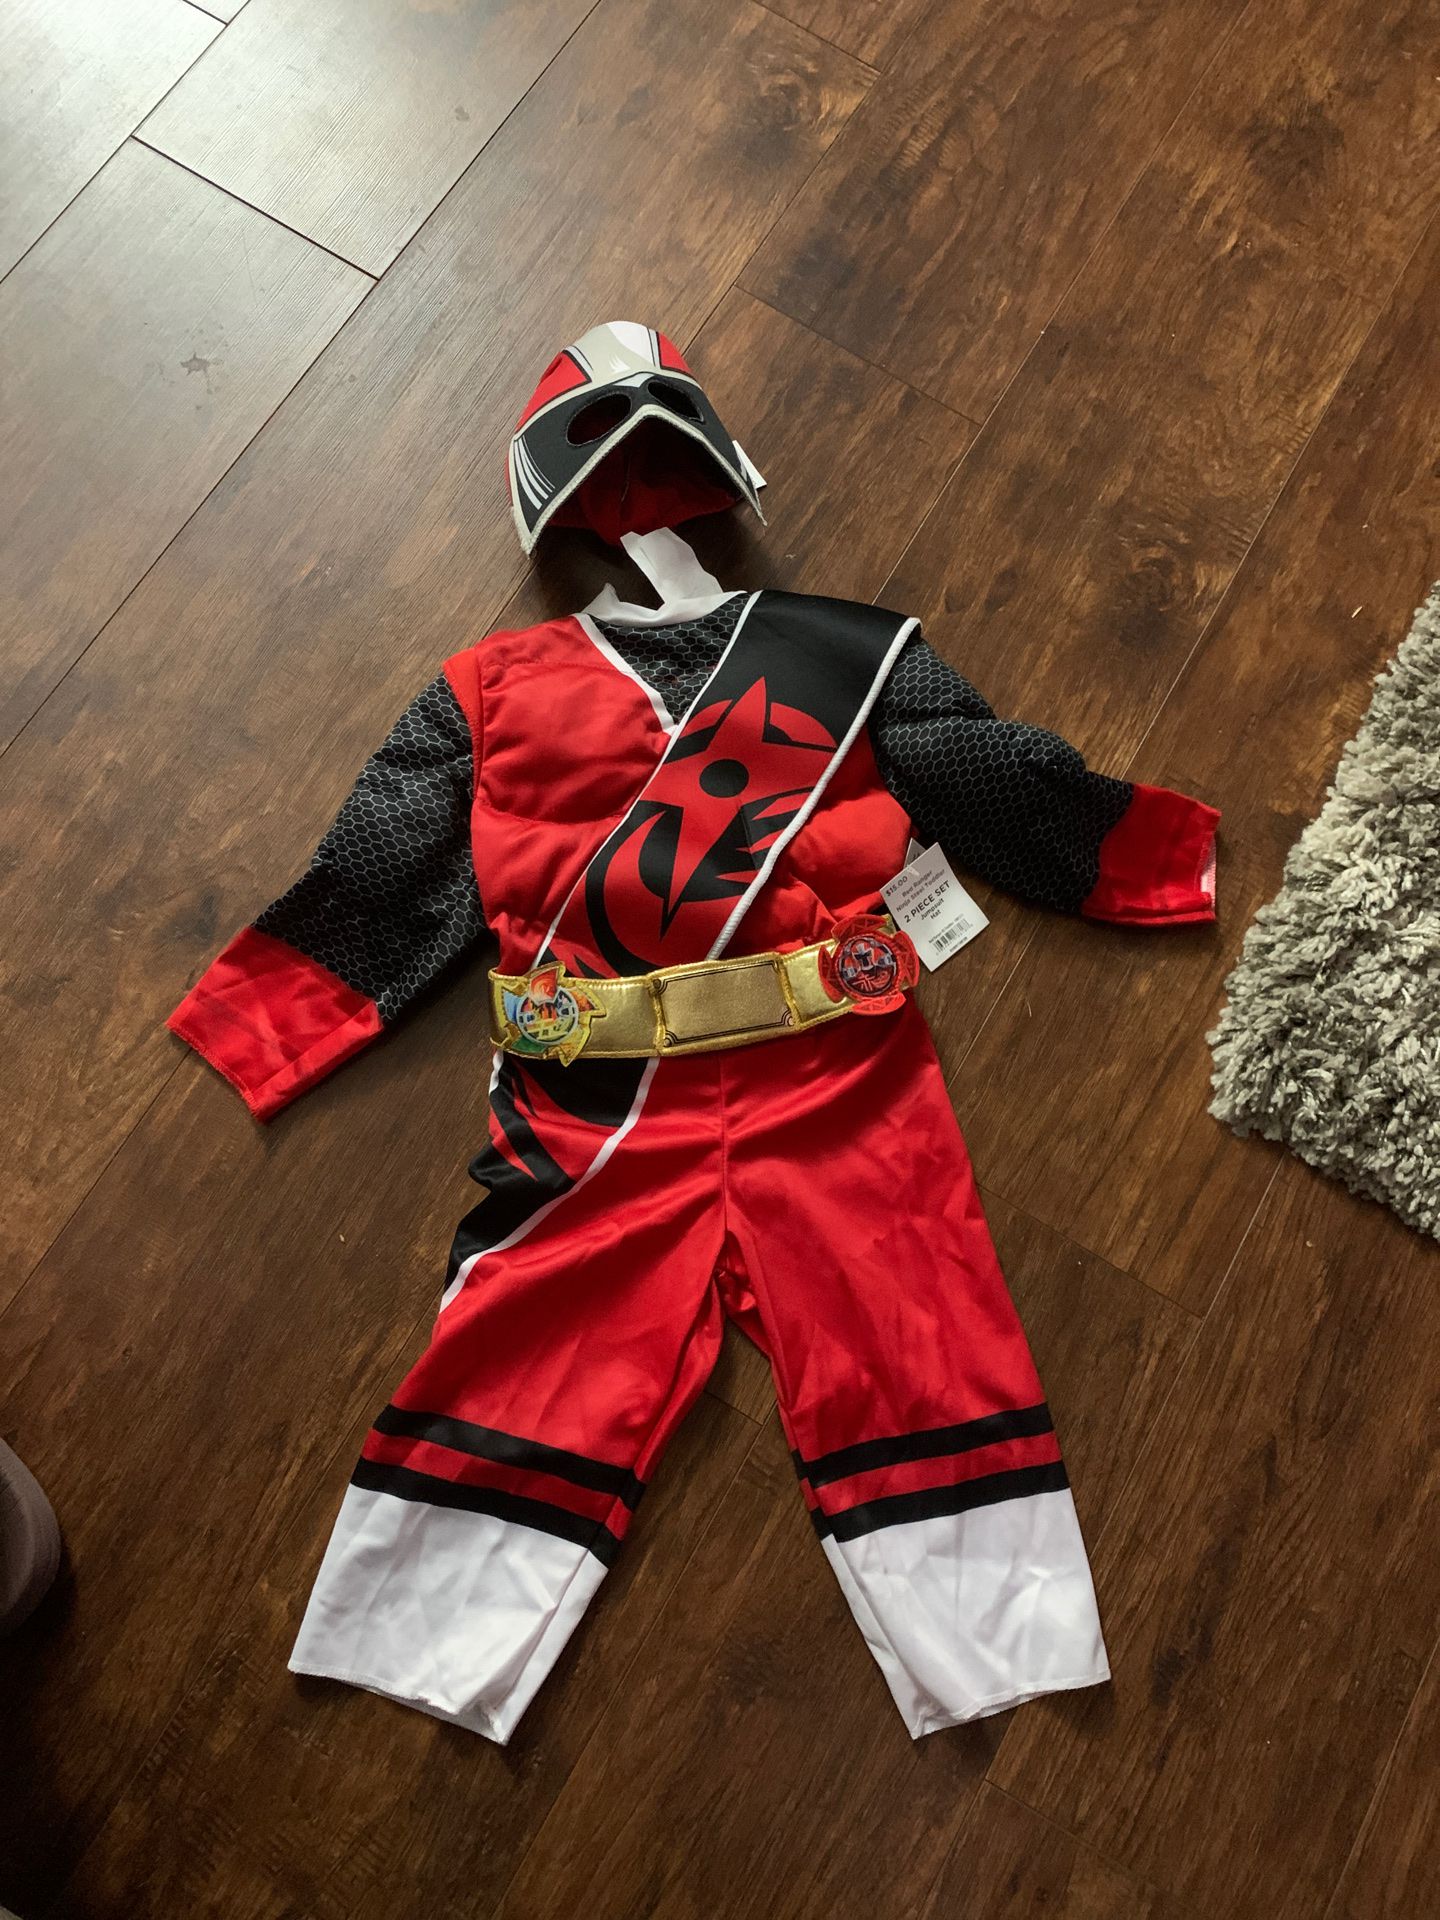 Red Power Ranger costume